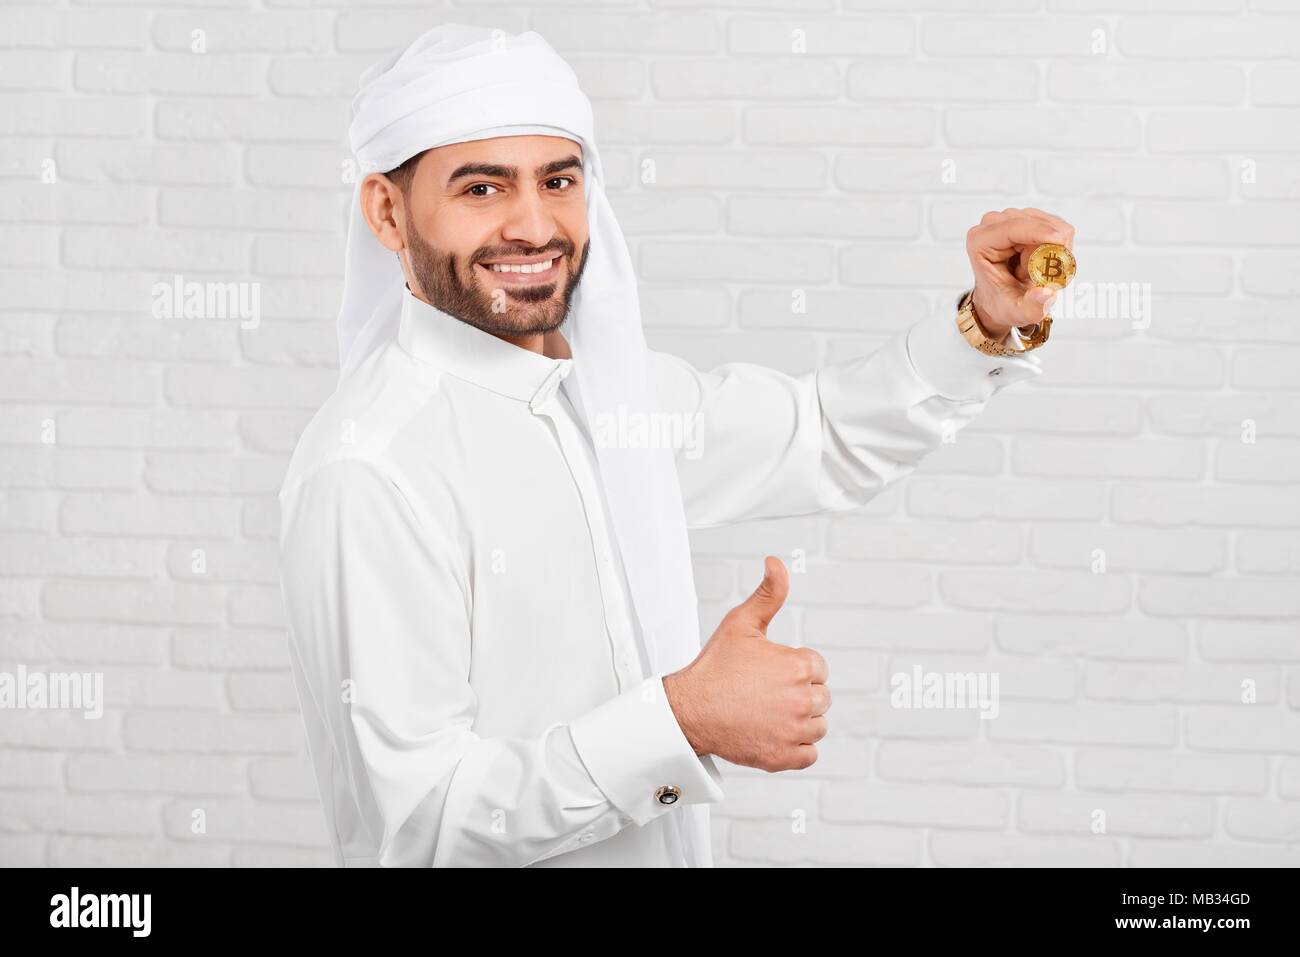 Studio photo of a smiling woman musulmane et bitcoin permet a l'air très heureux, debout sur fond blanc. Il porte le costume traditionnel arabe blanc,golden watch et les boutons de manchette. Banque D'Images